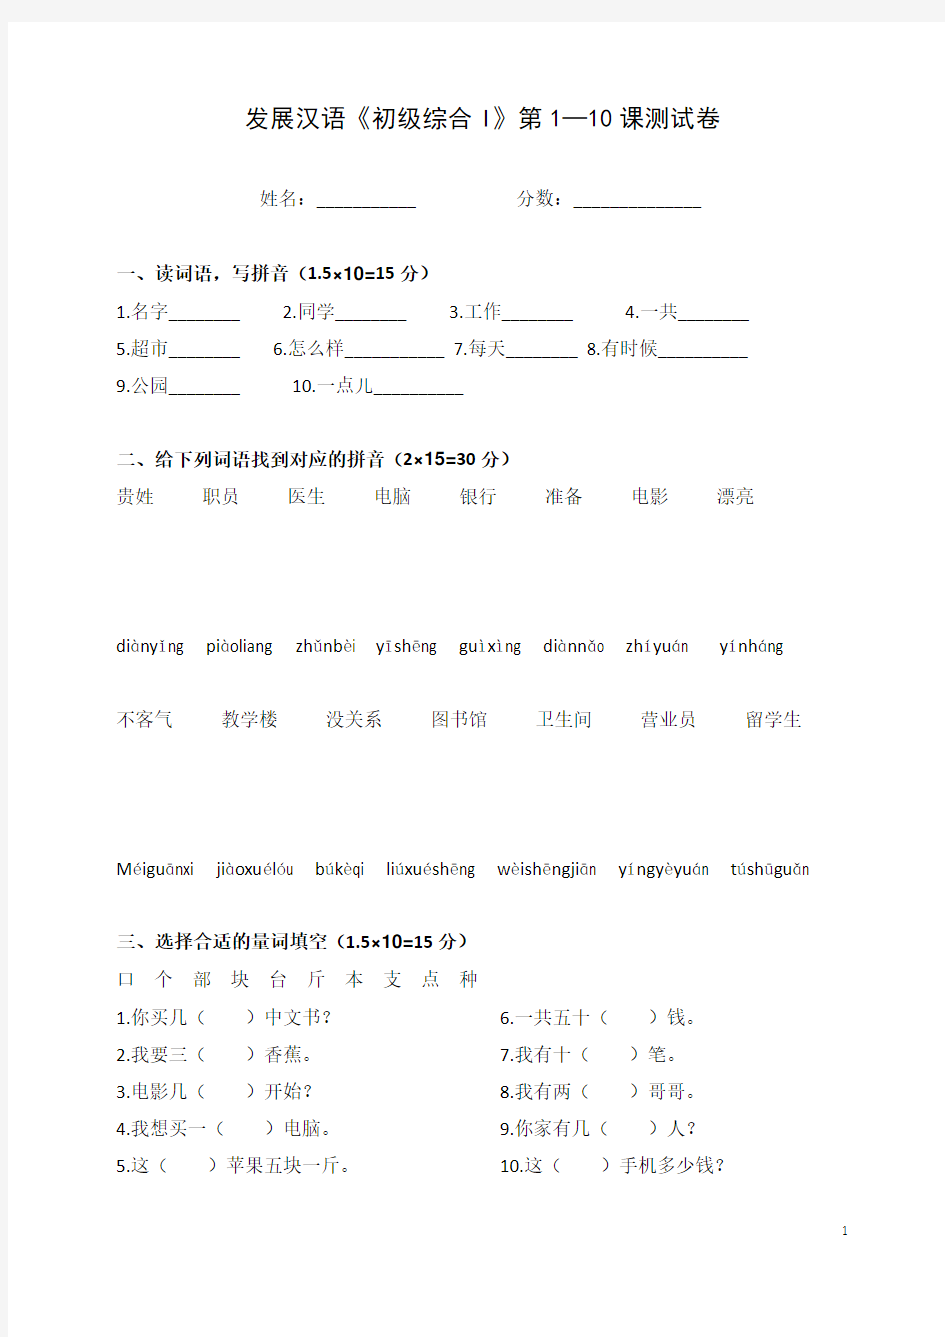 《发展汉语》初级综合(I)1-10课测试一